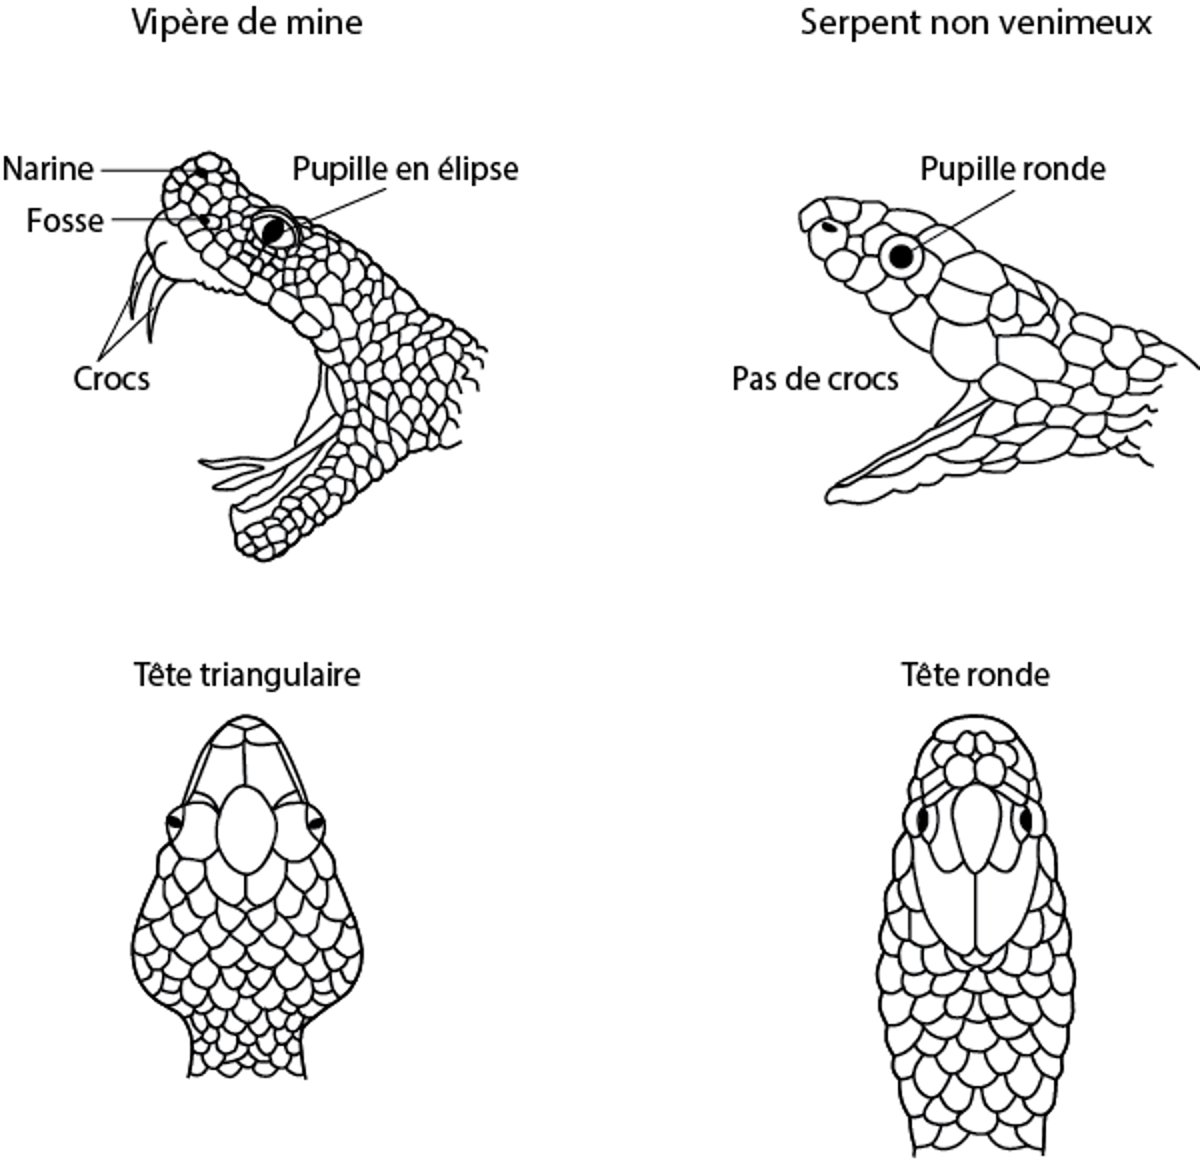 Identification de la pit viper ou vipère de mine ou de fosse